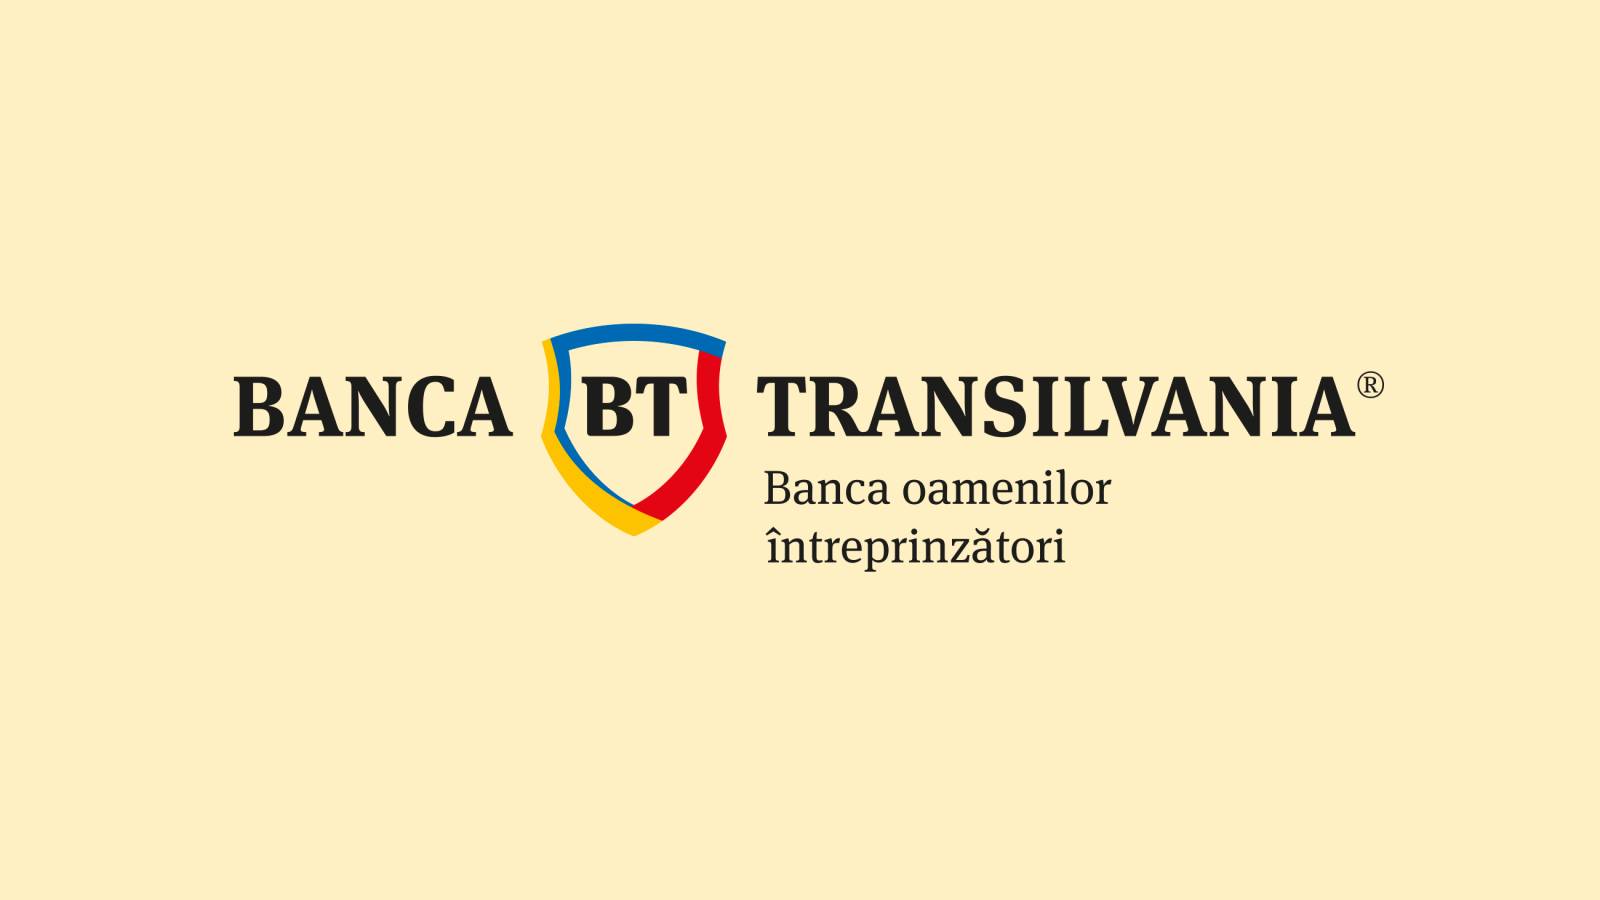 BANCA Transilvania Officiell SISTA MINUTEN-åtgärd Exklusiv Idag rumänska kunder